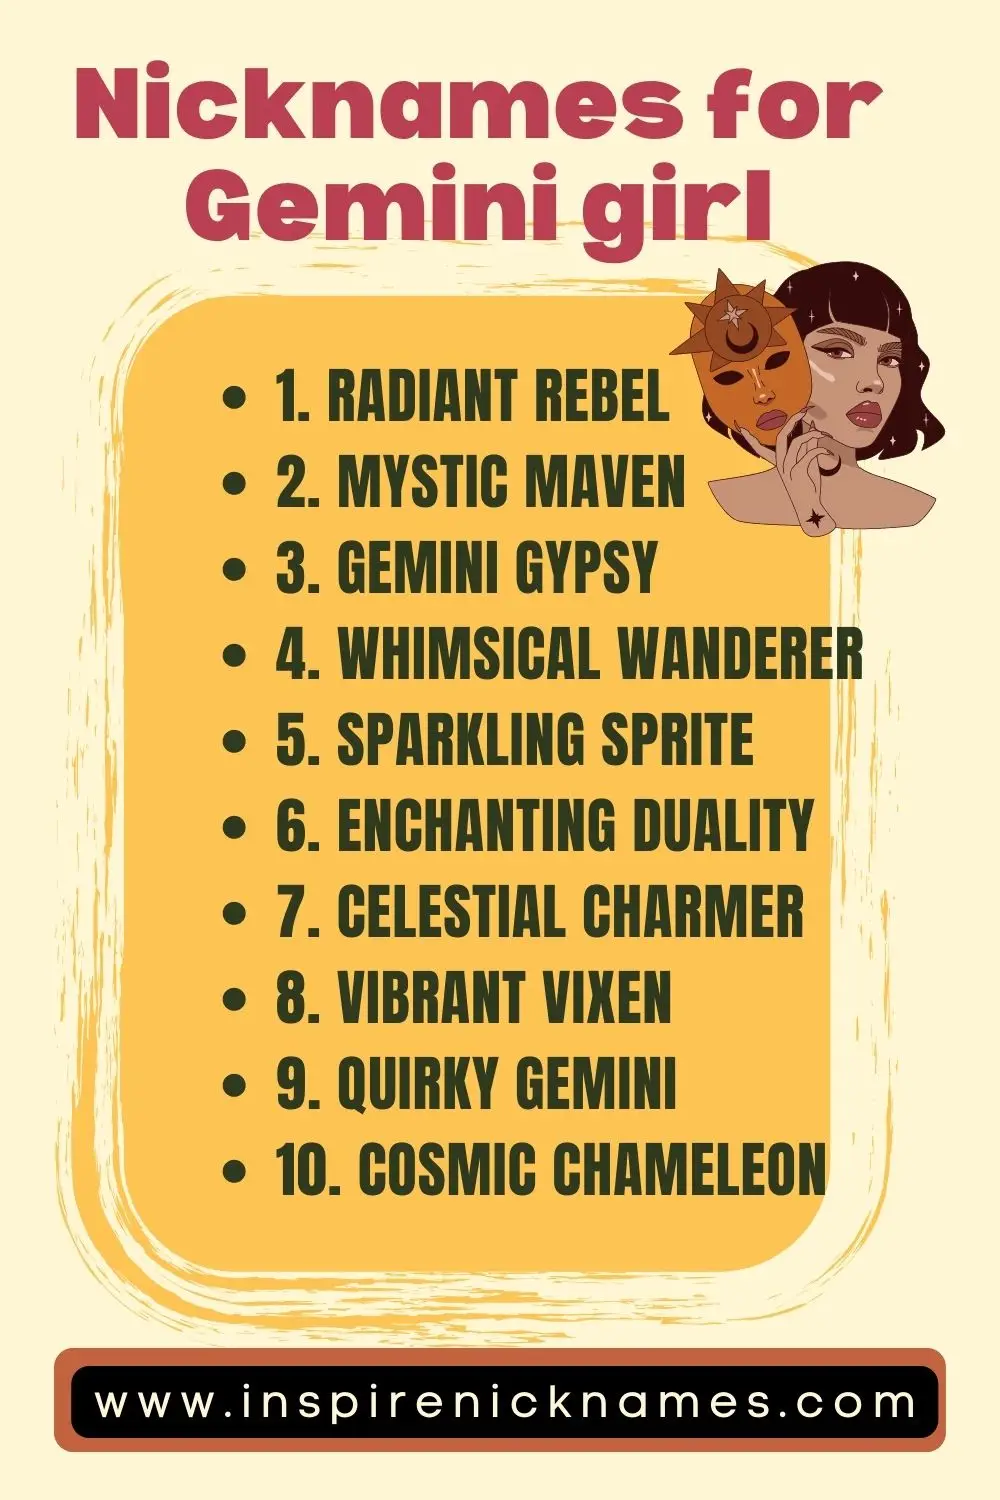 nicknames for Gemini girl list ideas